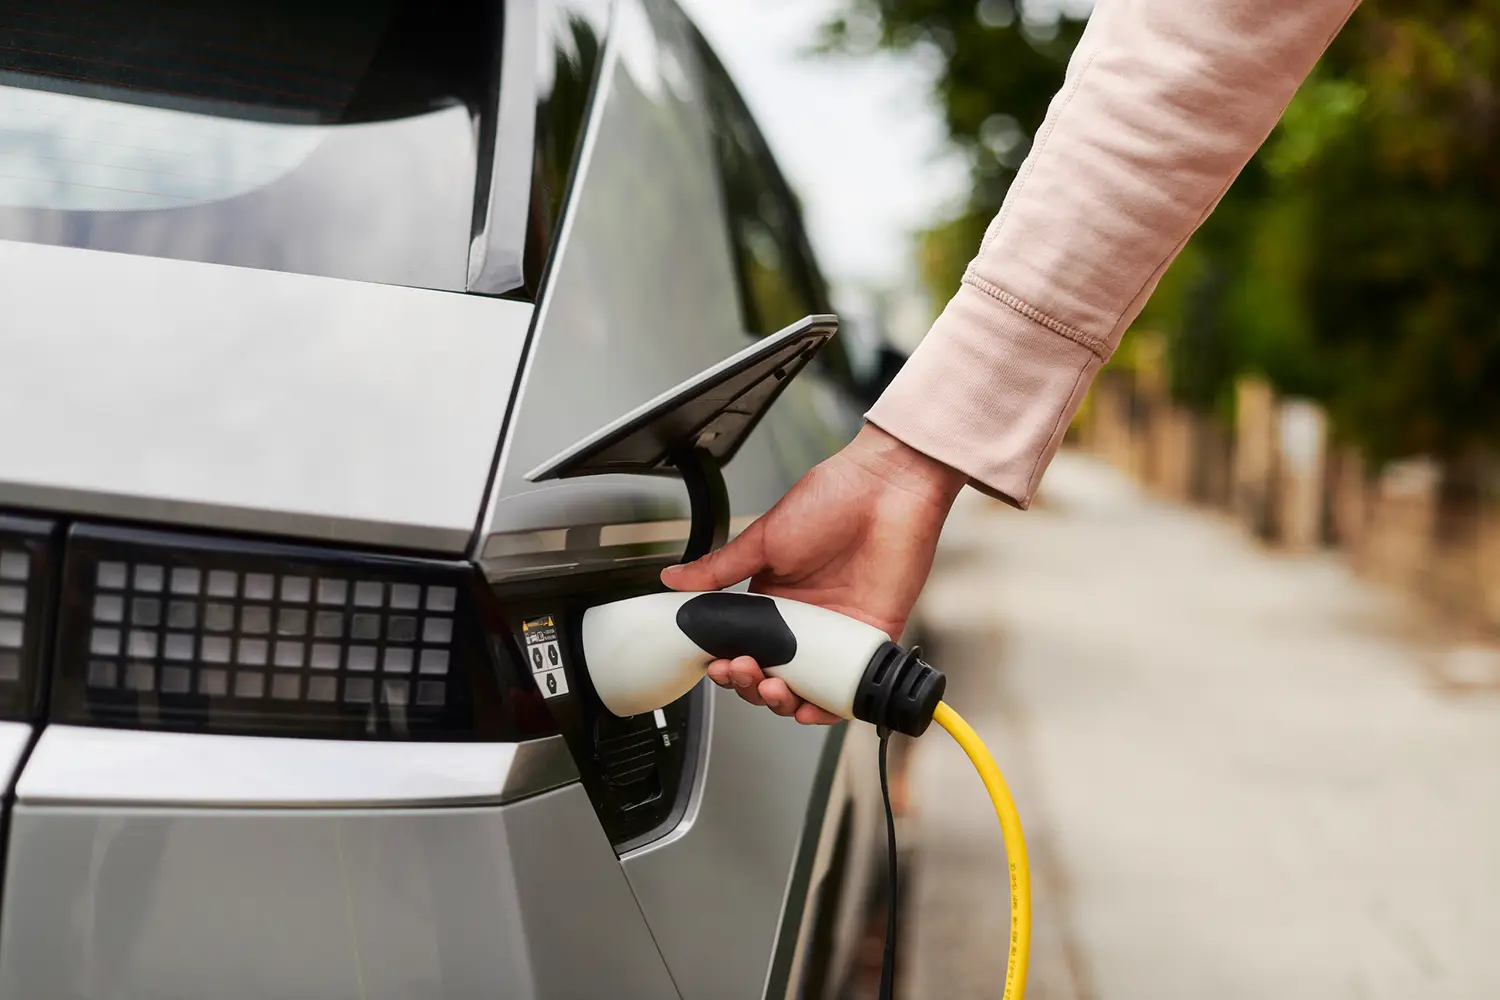 Le conducteur relie le câble de recharge à la station de recharge ubitricity, qui aide les villes et les communes à développer l'infrastructure pour l'électromobilité.